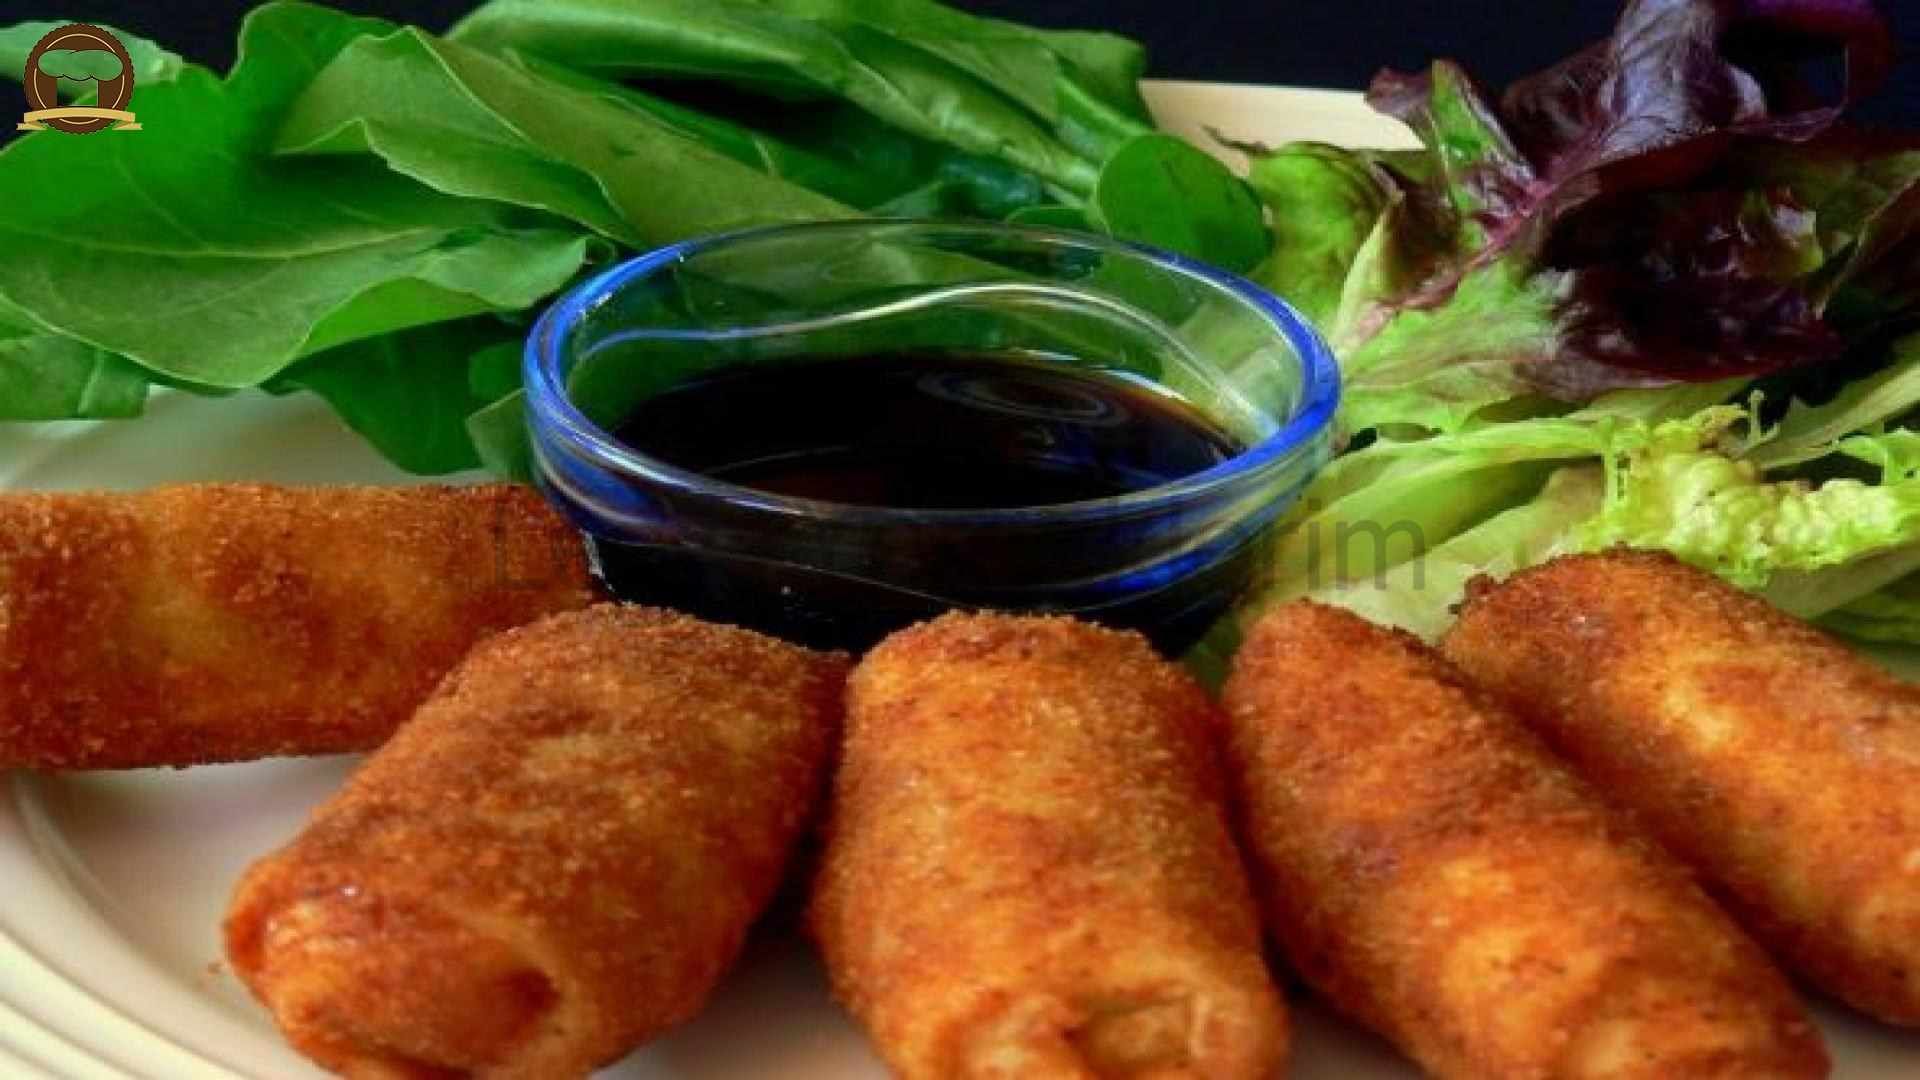  Krokette Hintergrundbild 1920x1080. Çin Böreği Yemeklerim. Yemek Tarifi. Yemek, Çin böreği, Yemek tarifleri